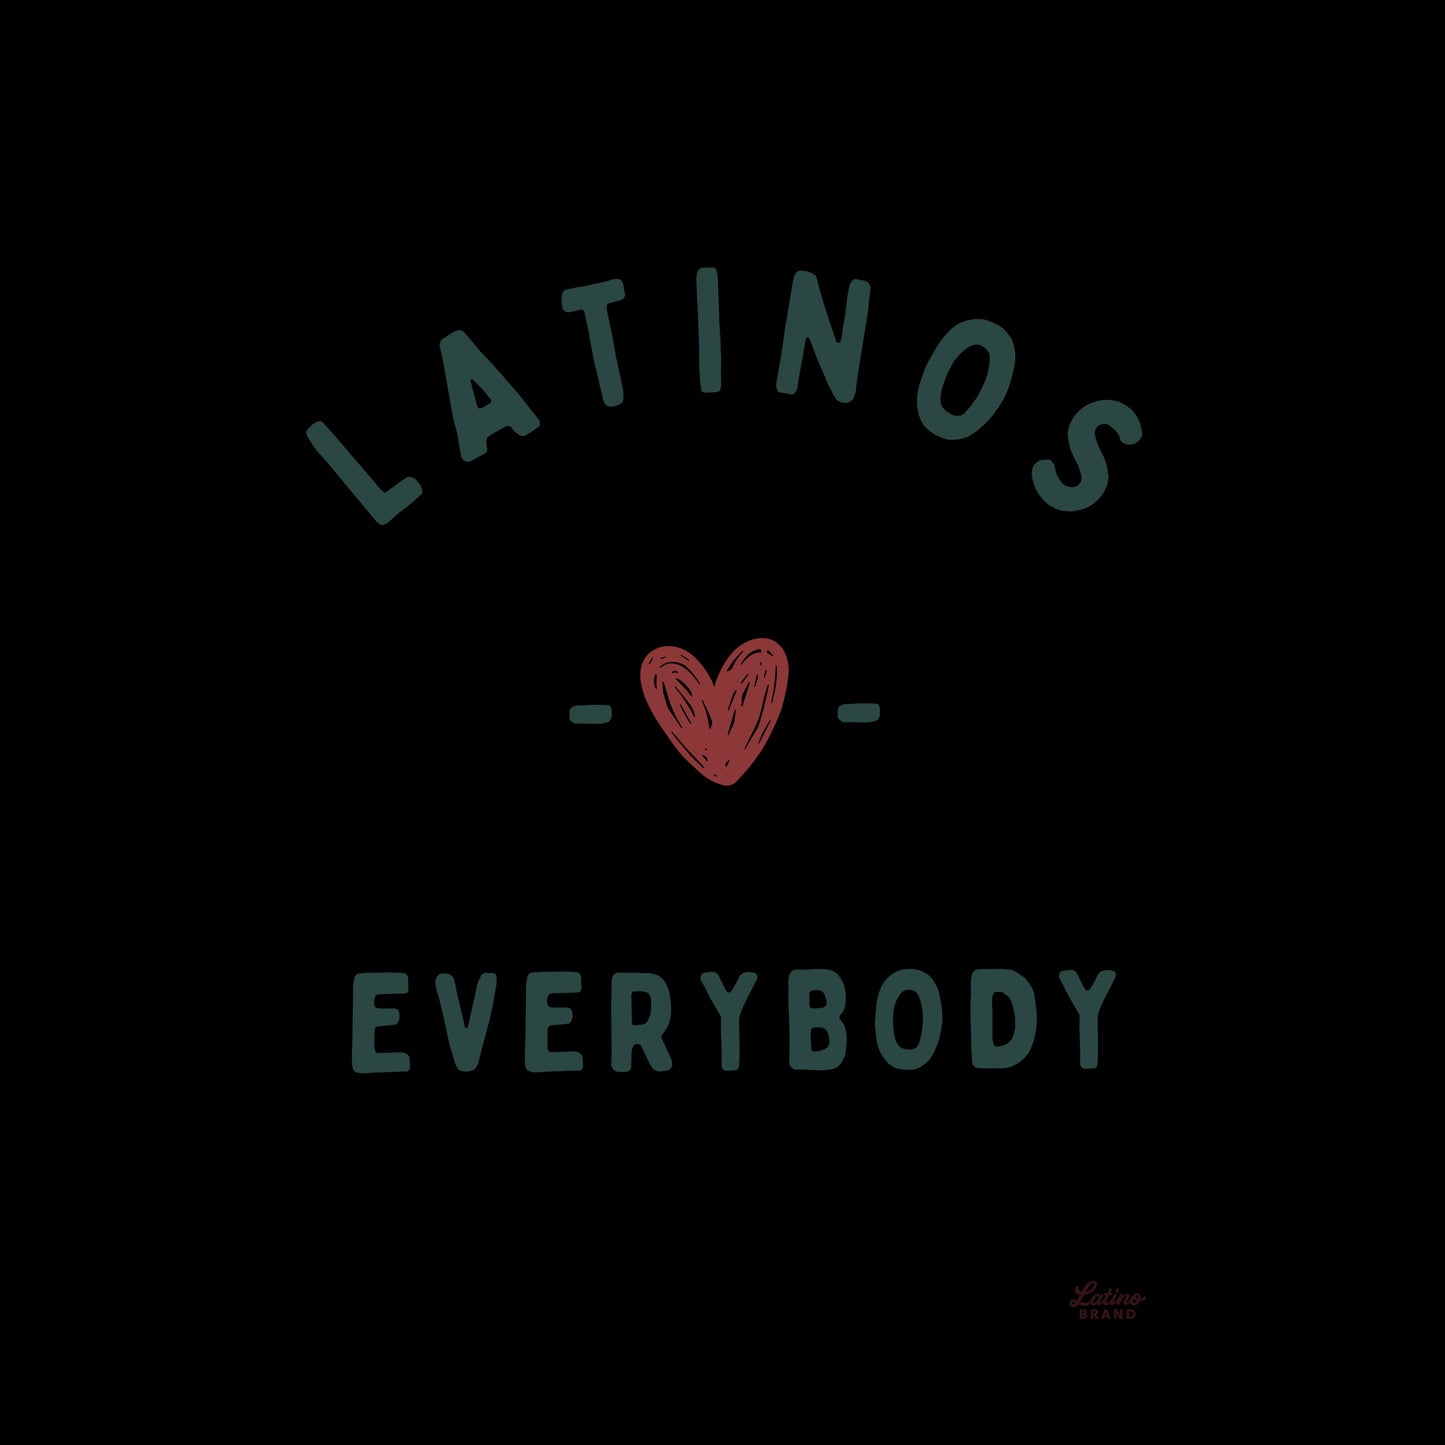 Latinos Love Sweatshirt